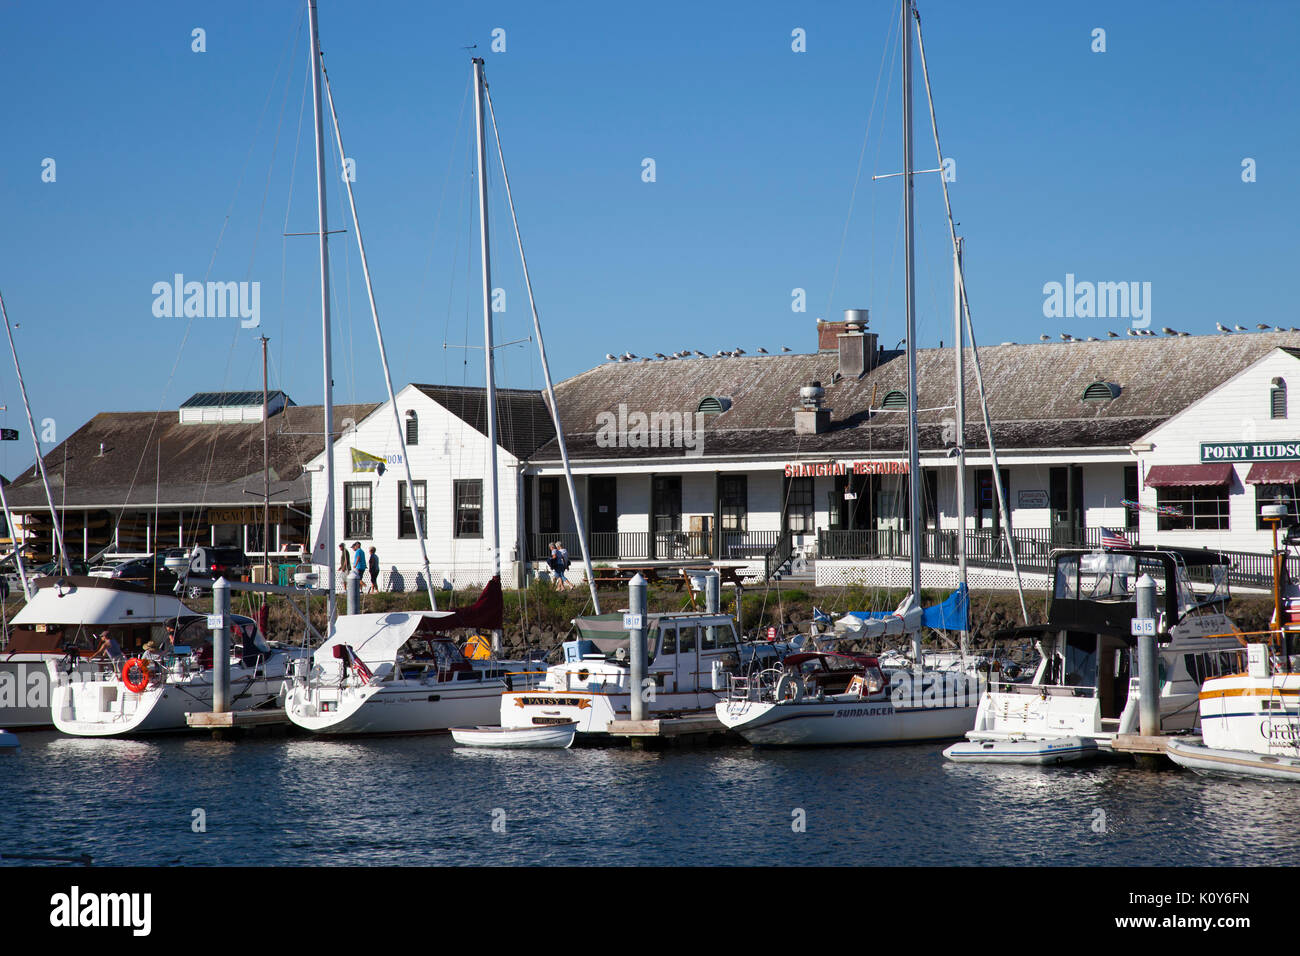 Punto Hudson Marina, ristorante e caffetteria, edificio Port Townsend, nello Stato di Washington, USA, America Foto Stock